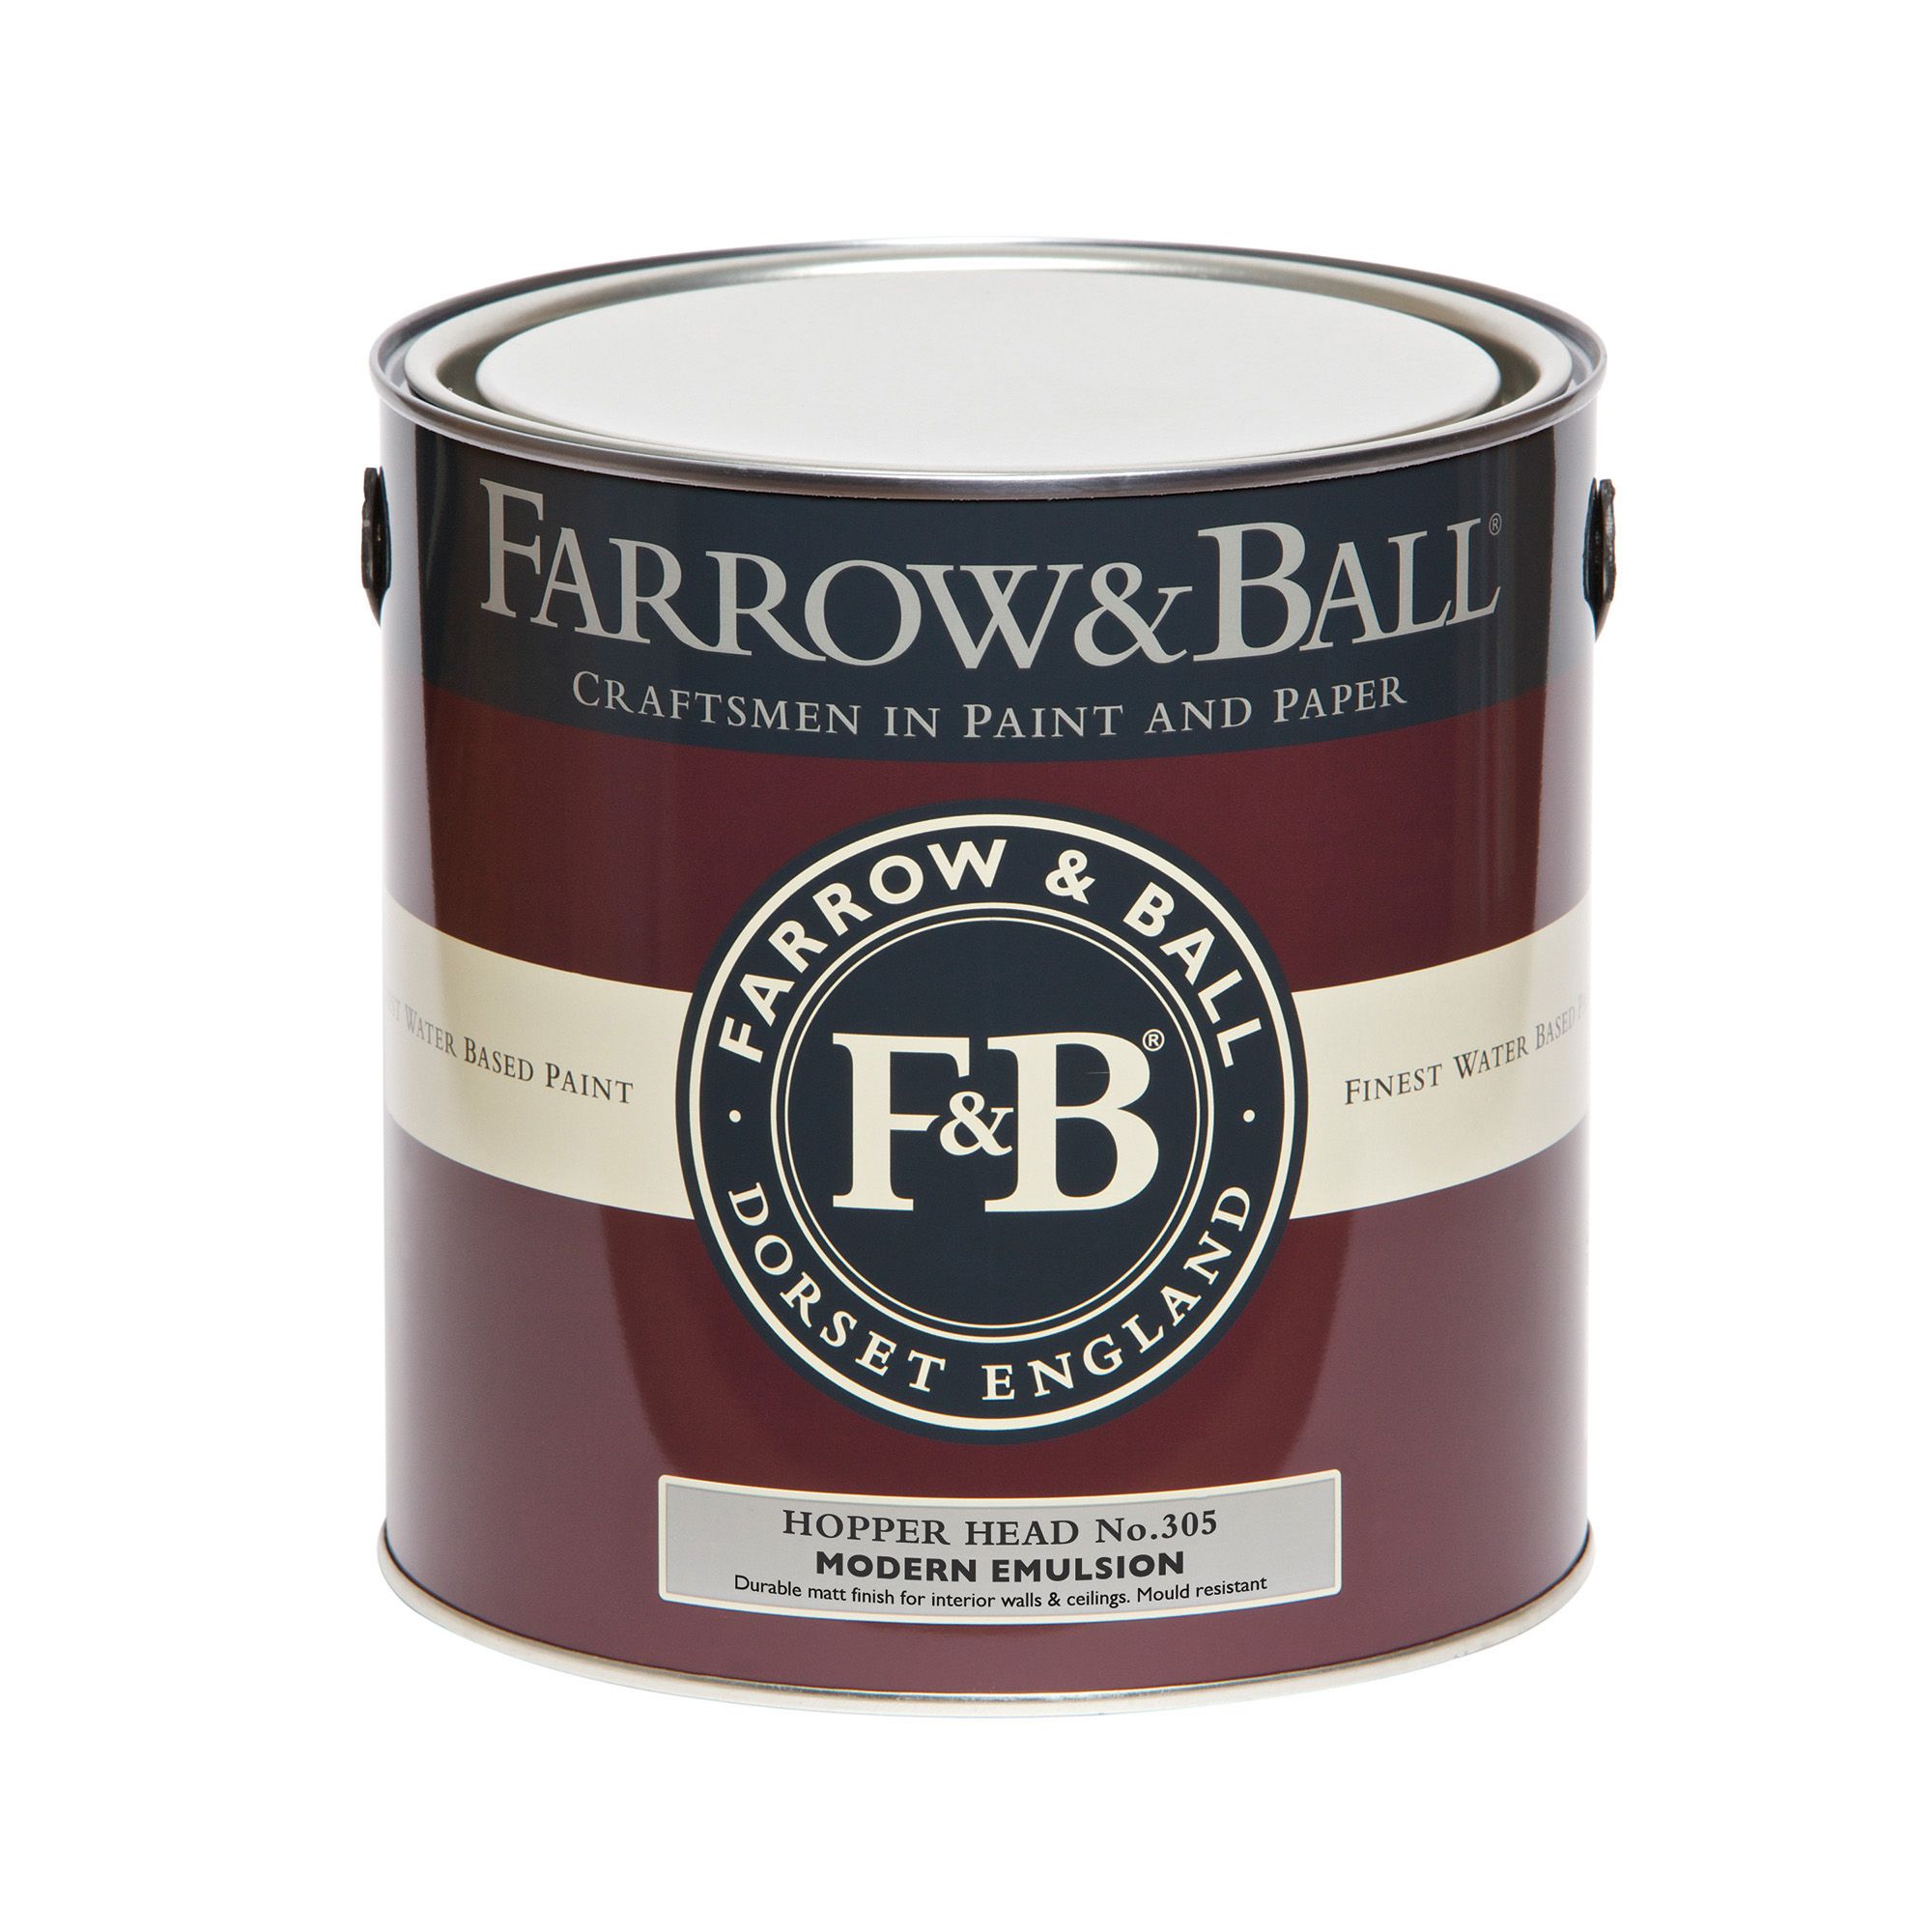 Farrow & Ball Modern Hopper Head No.305 Matt Emulsion paint, 2.5L